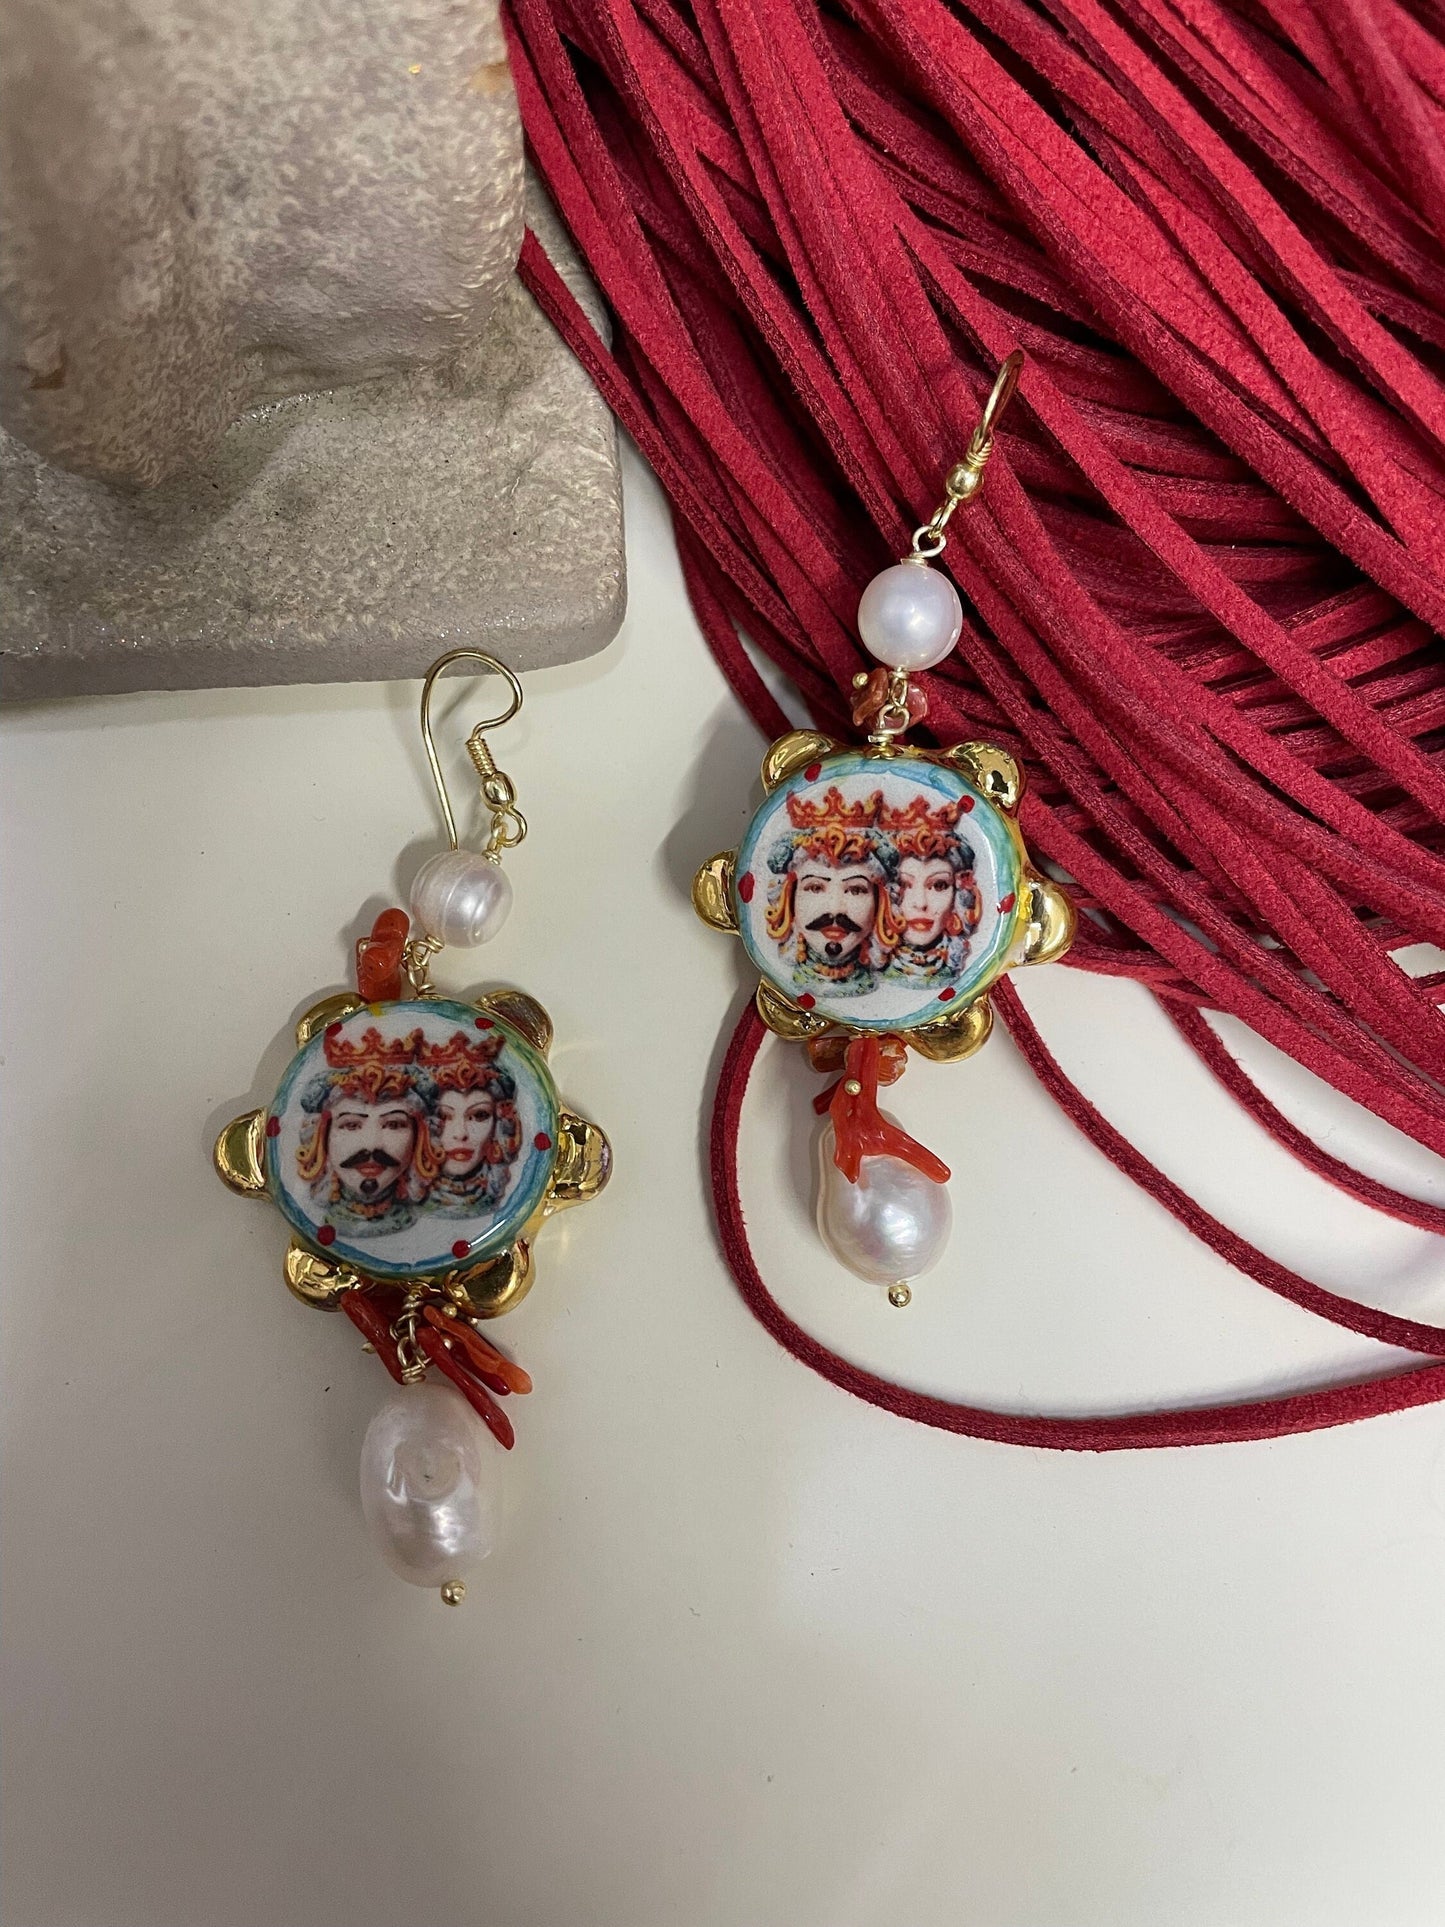 Orecchini siciliani con tamburelli in ceramica di Caltagirone dipinta a mano, perle barocche e chips di coralli regalo per lei.§